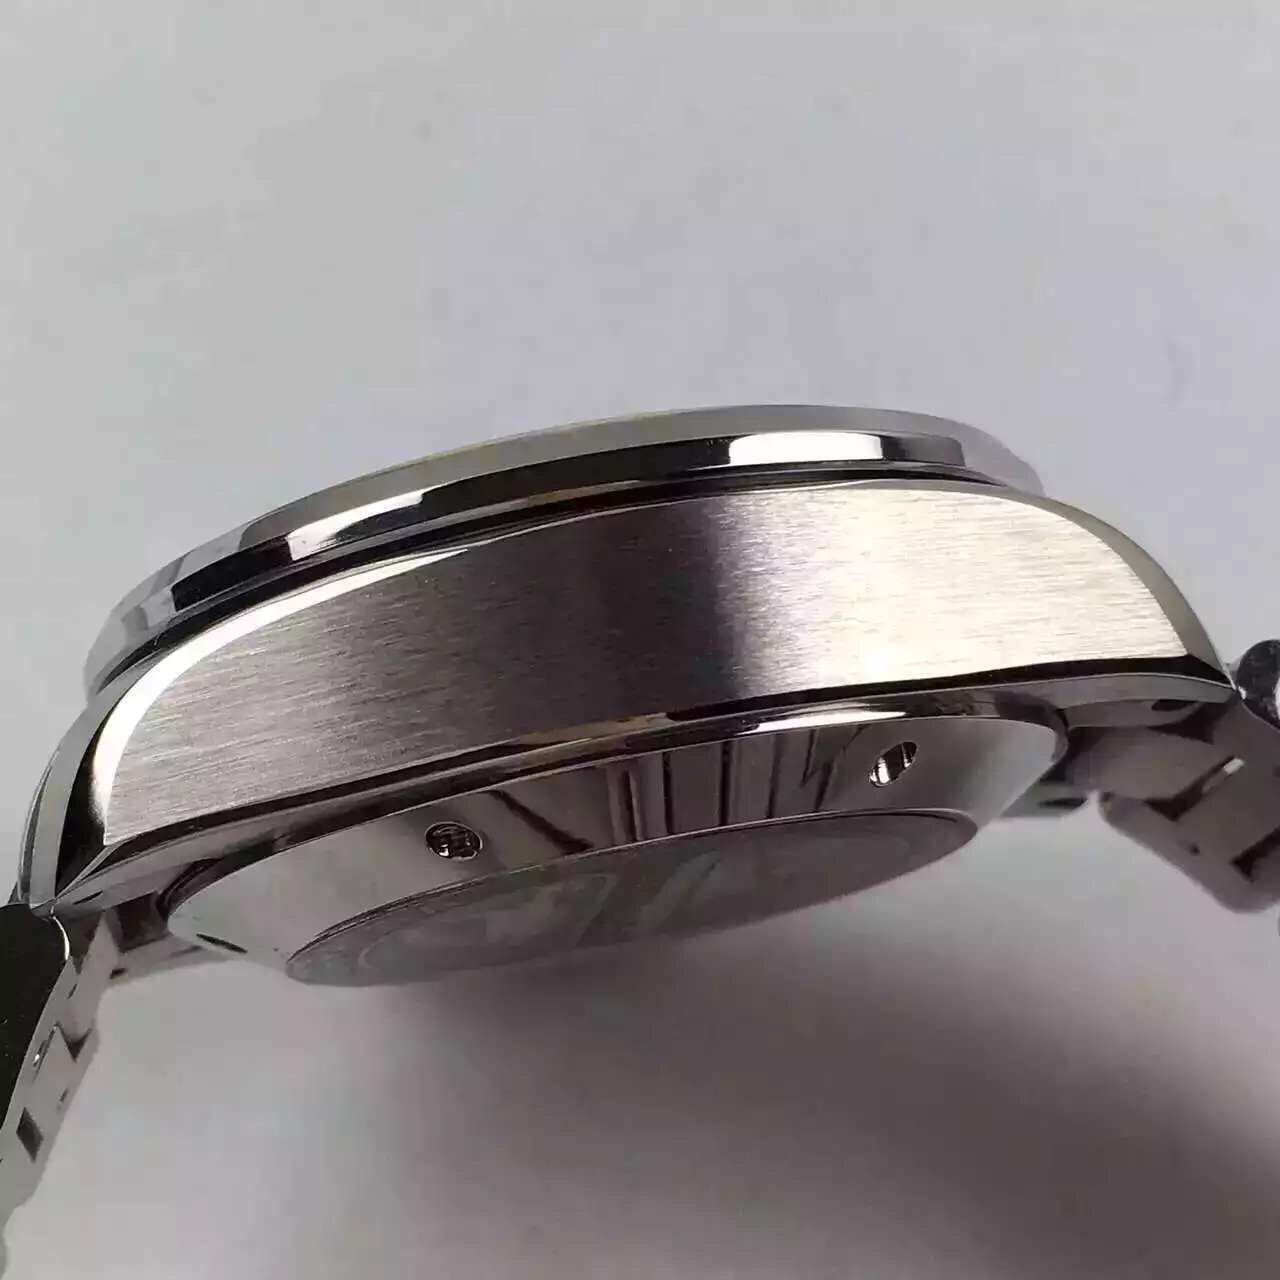 2023030607101253 - 泰格豪雅卡萊拉高仿手錶 V6廠泰格豪雅￥2980